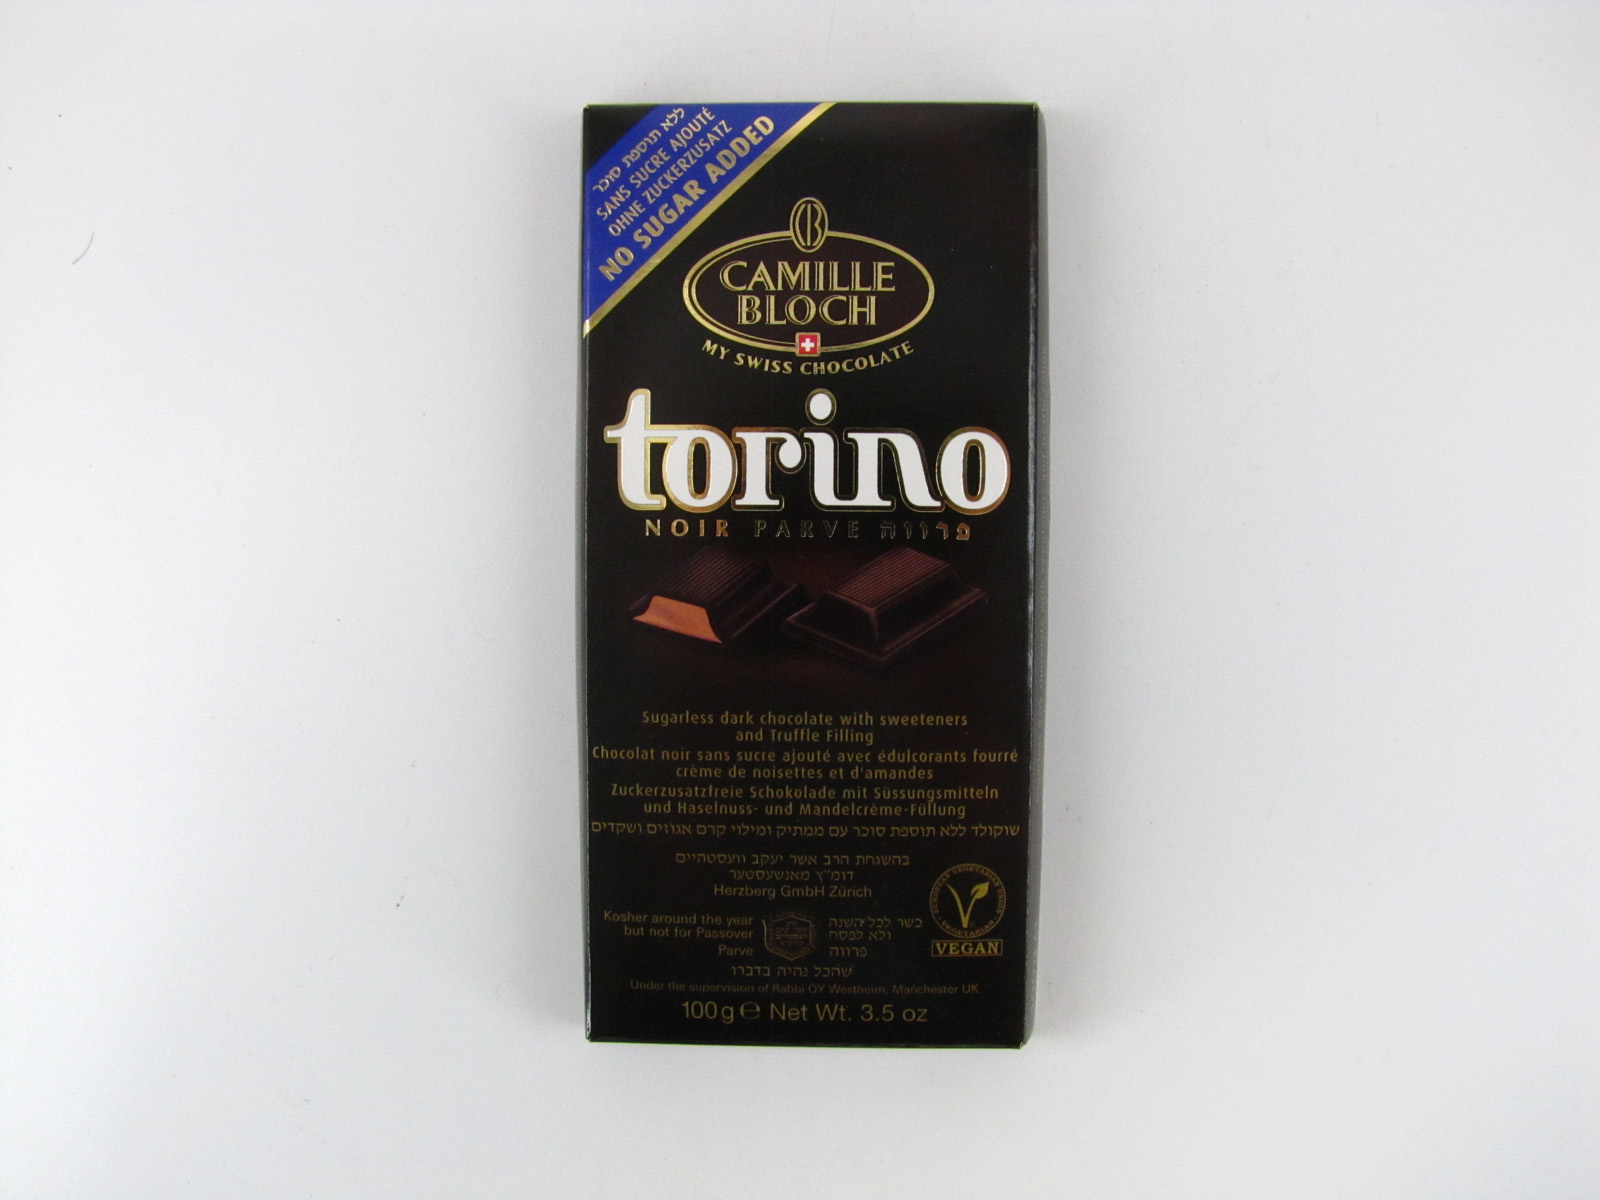 Camille Bloch - Torino Dark Chocolate - front view